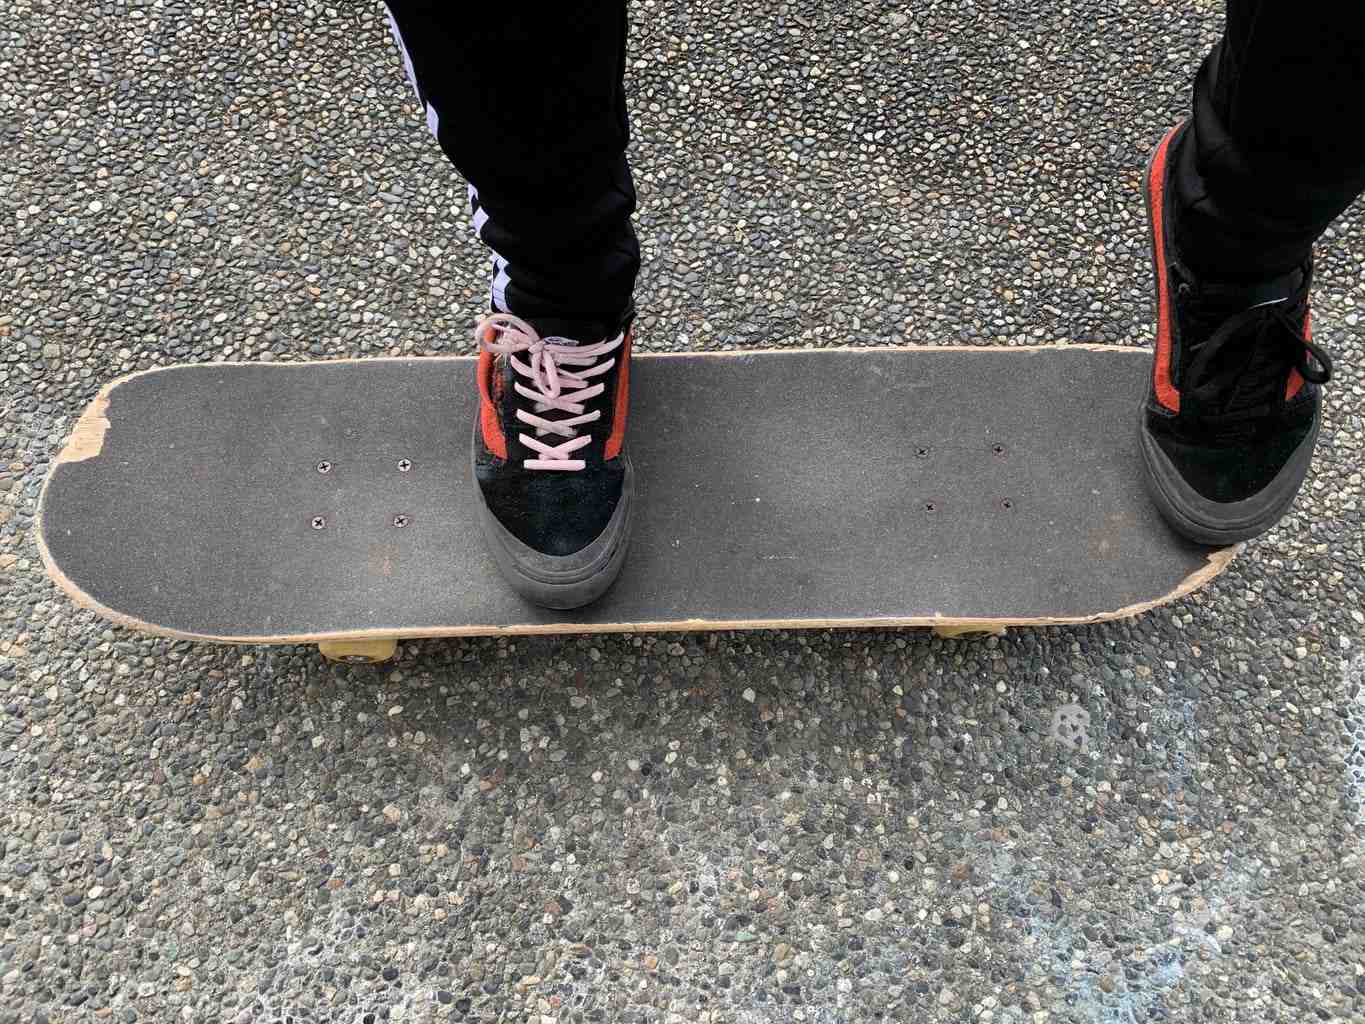 Comment placer ses pieds sur un skate ?